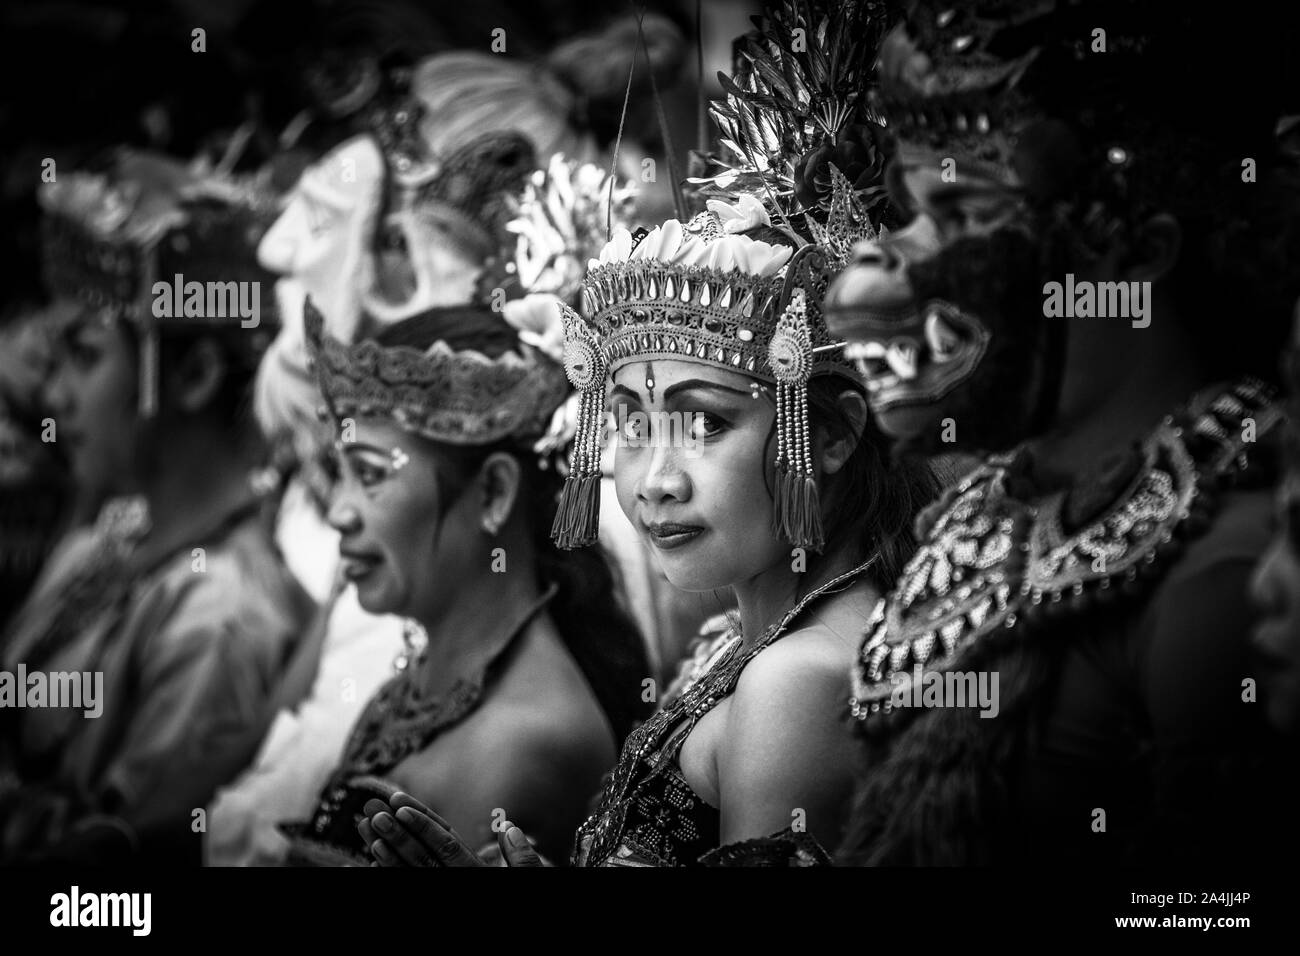 Tourné en noir et blanc de gens en costumes traditionnel indonésien de Garuda et Barong durant la cérémonie de danse rituelle danse Kecak à Bali, Indonésie Banque D'Images